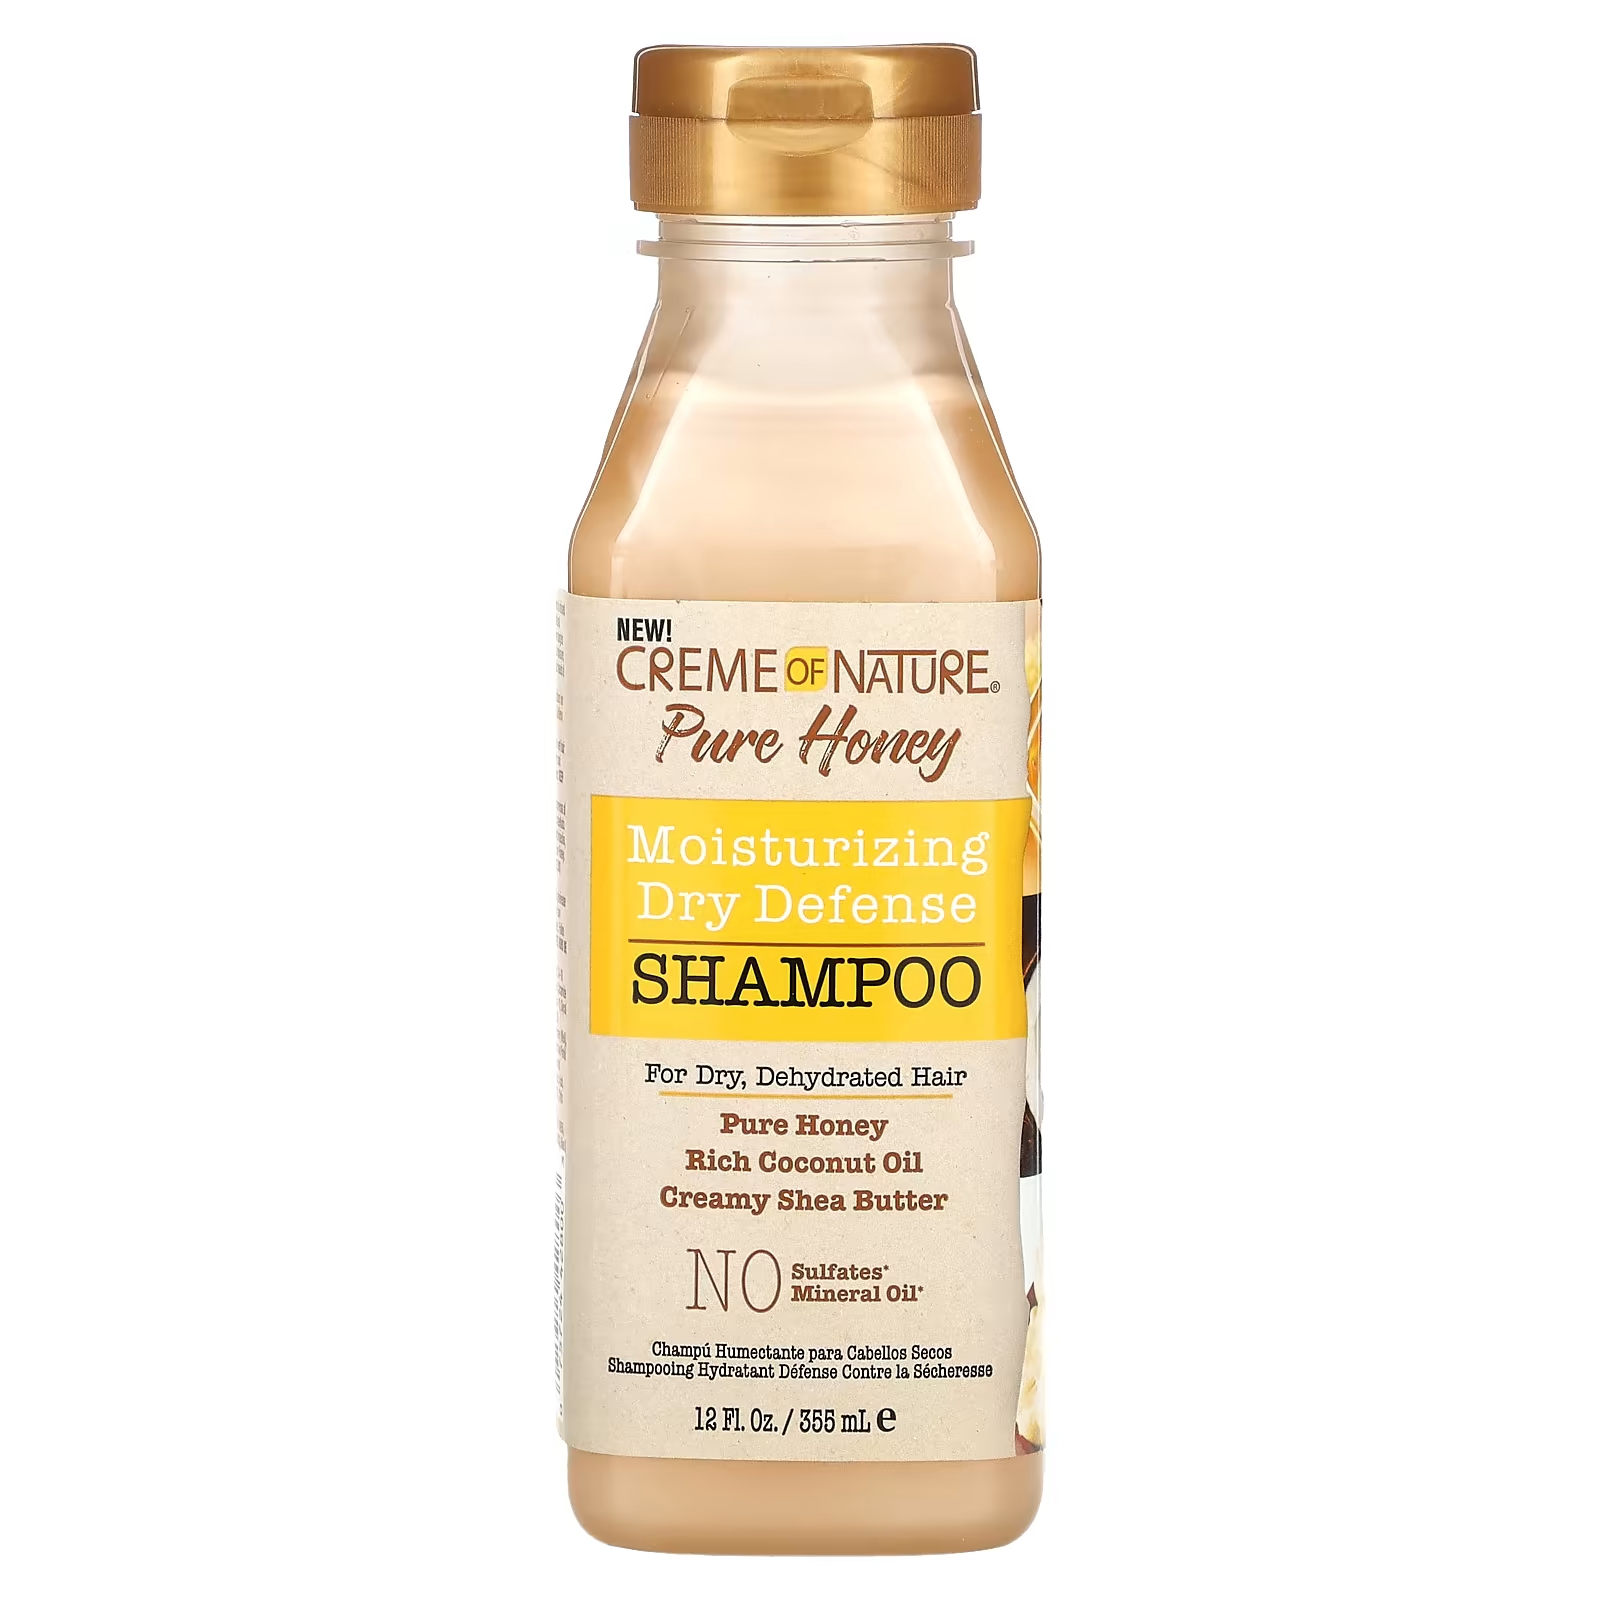 Creme Of Nature Pure Honey Увлажняющий сухой защитный шампунь для сухих обезвоженных волос, 12 жидких унций (355 мл) creme of nature clay